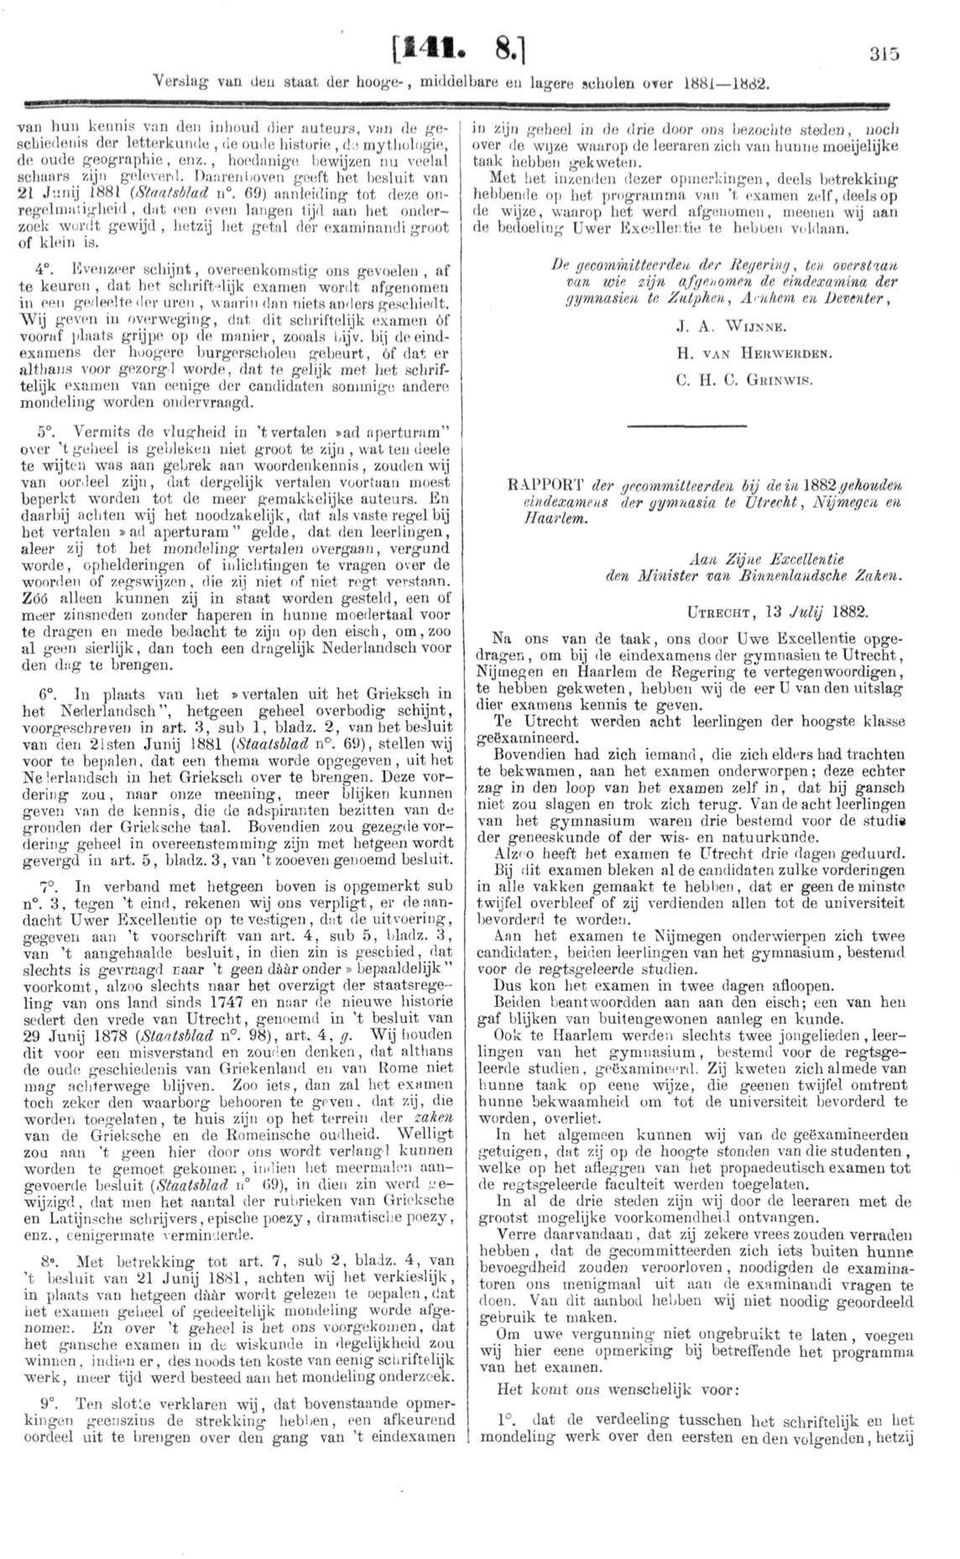 Dan ren boven geeft het besluit van 21 Junij 1881 (Staatsblad n.